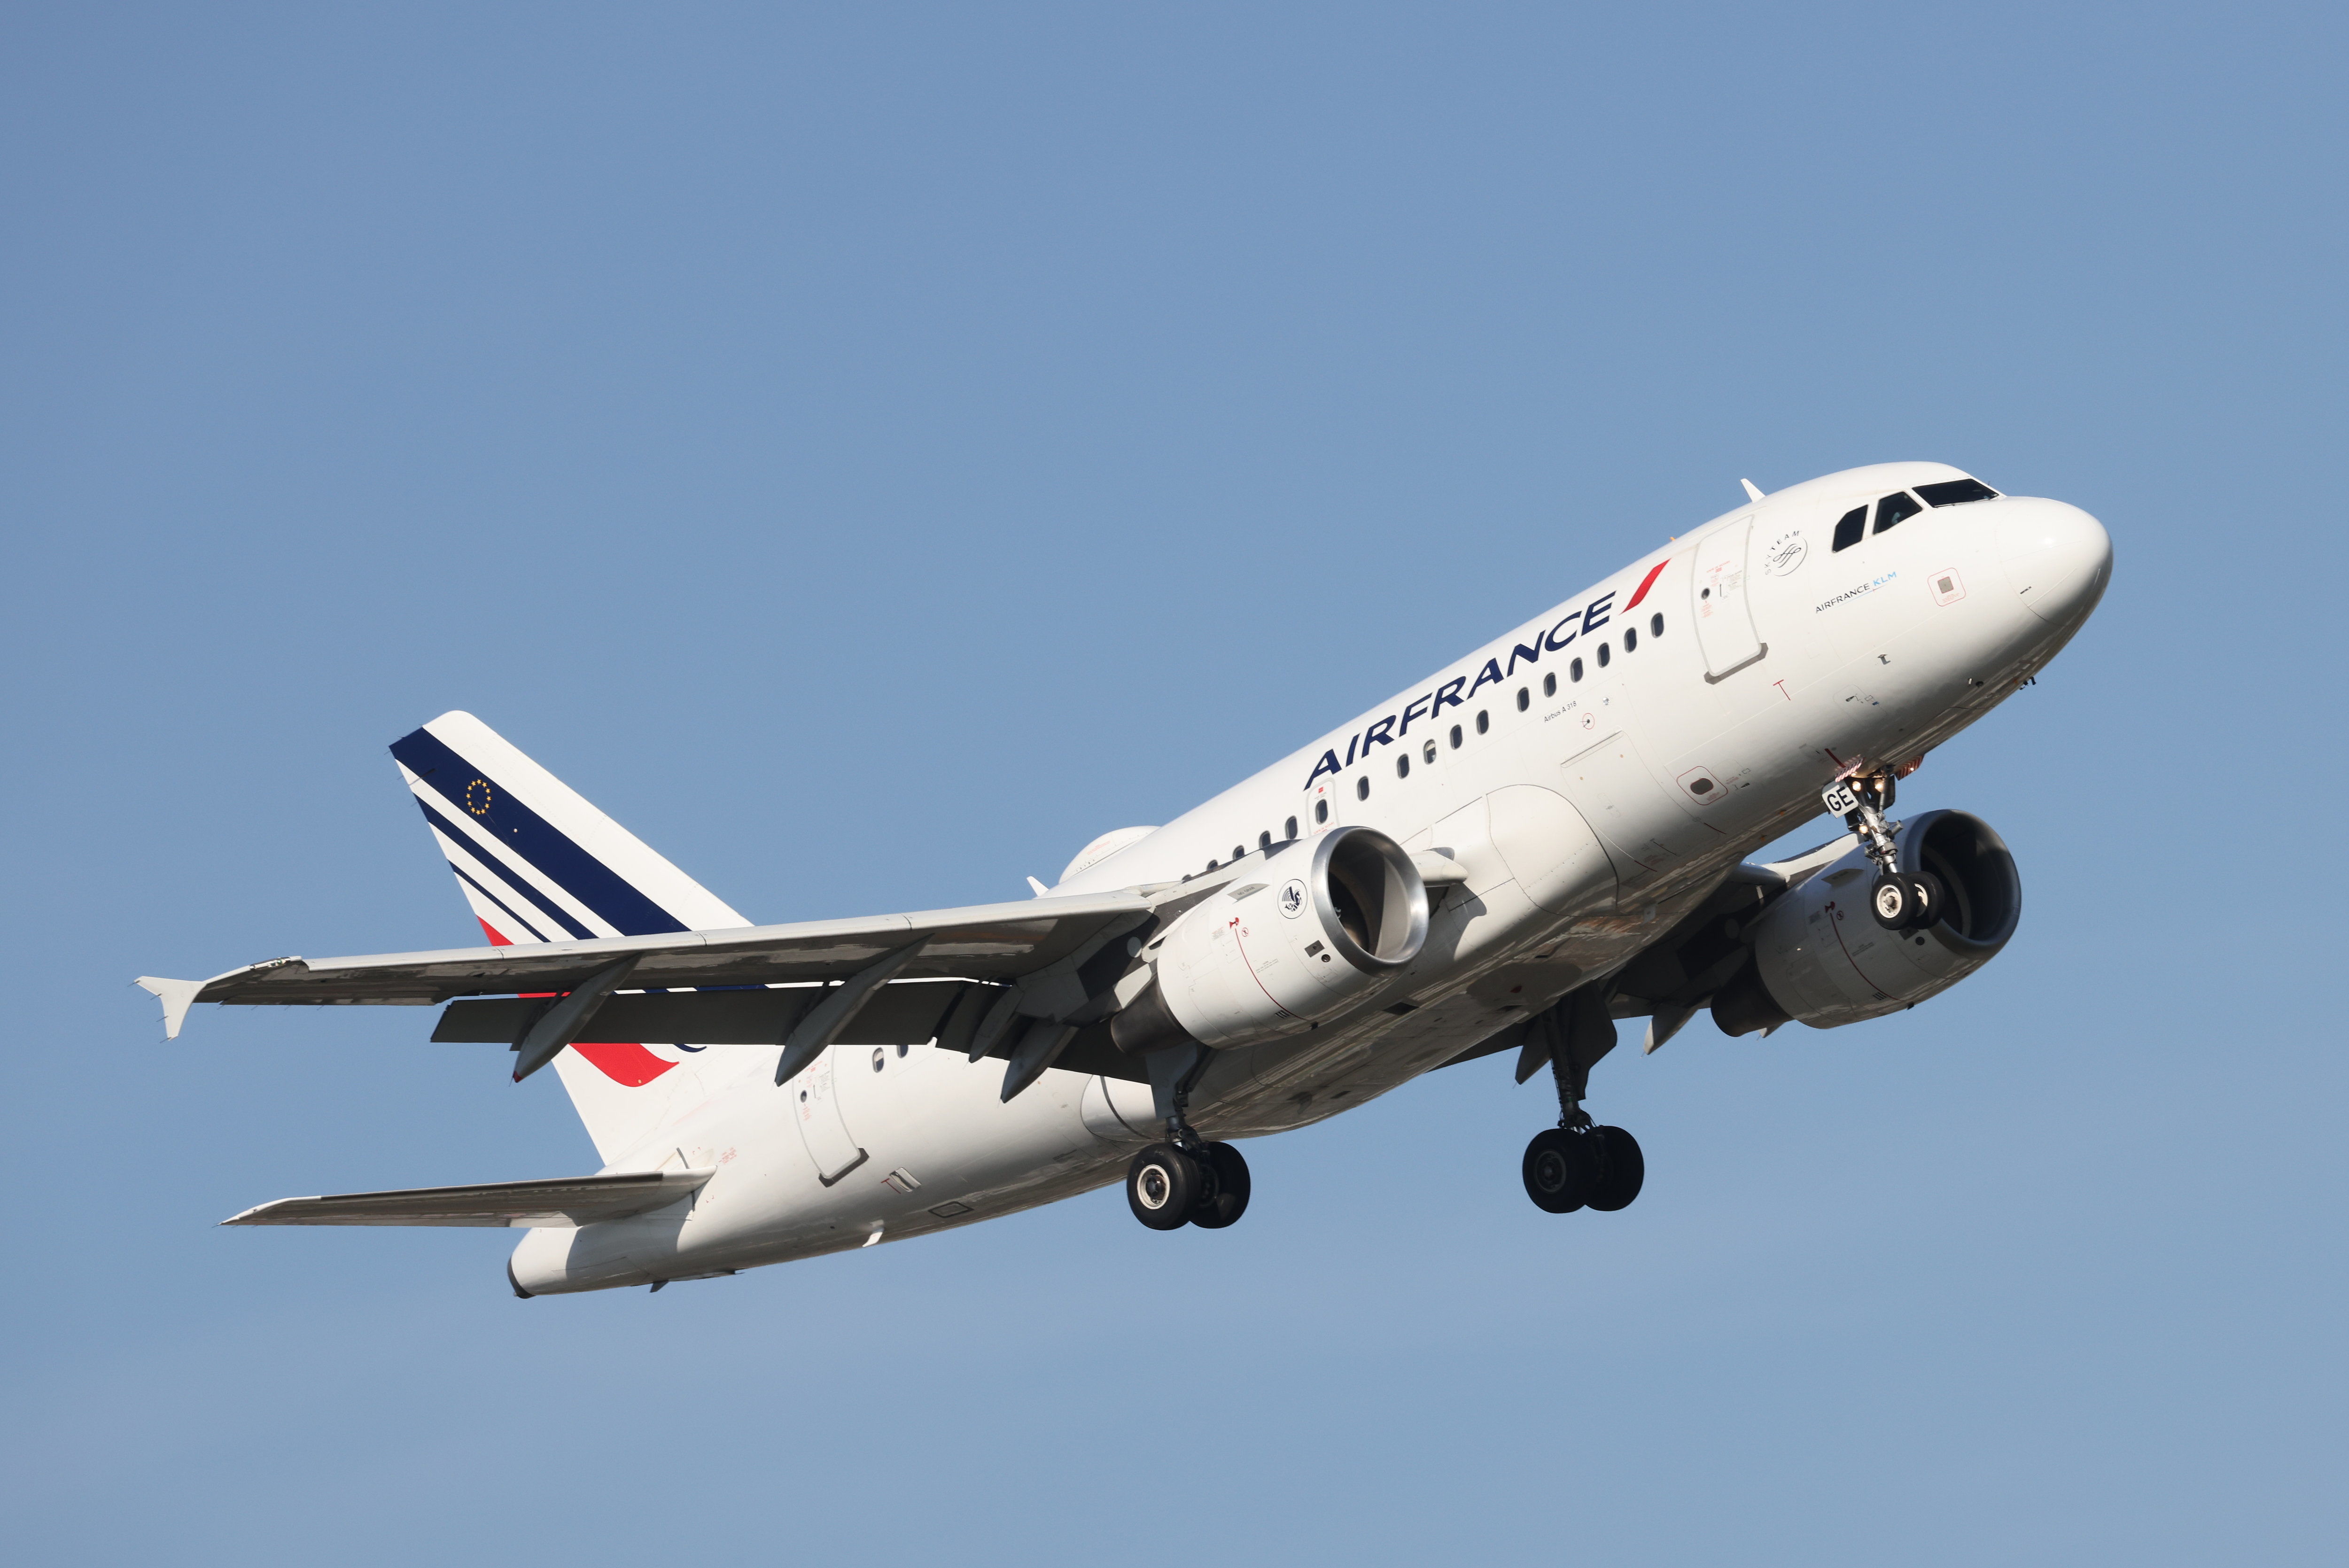 Certaines compagnies aériennes comme Air France se vantent d'avoir déjà amorcé la transition vers les carburants durables d'aviation. LP/Arnaud Journois